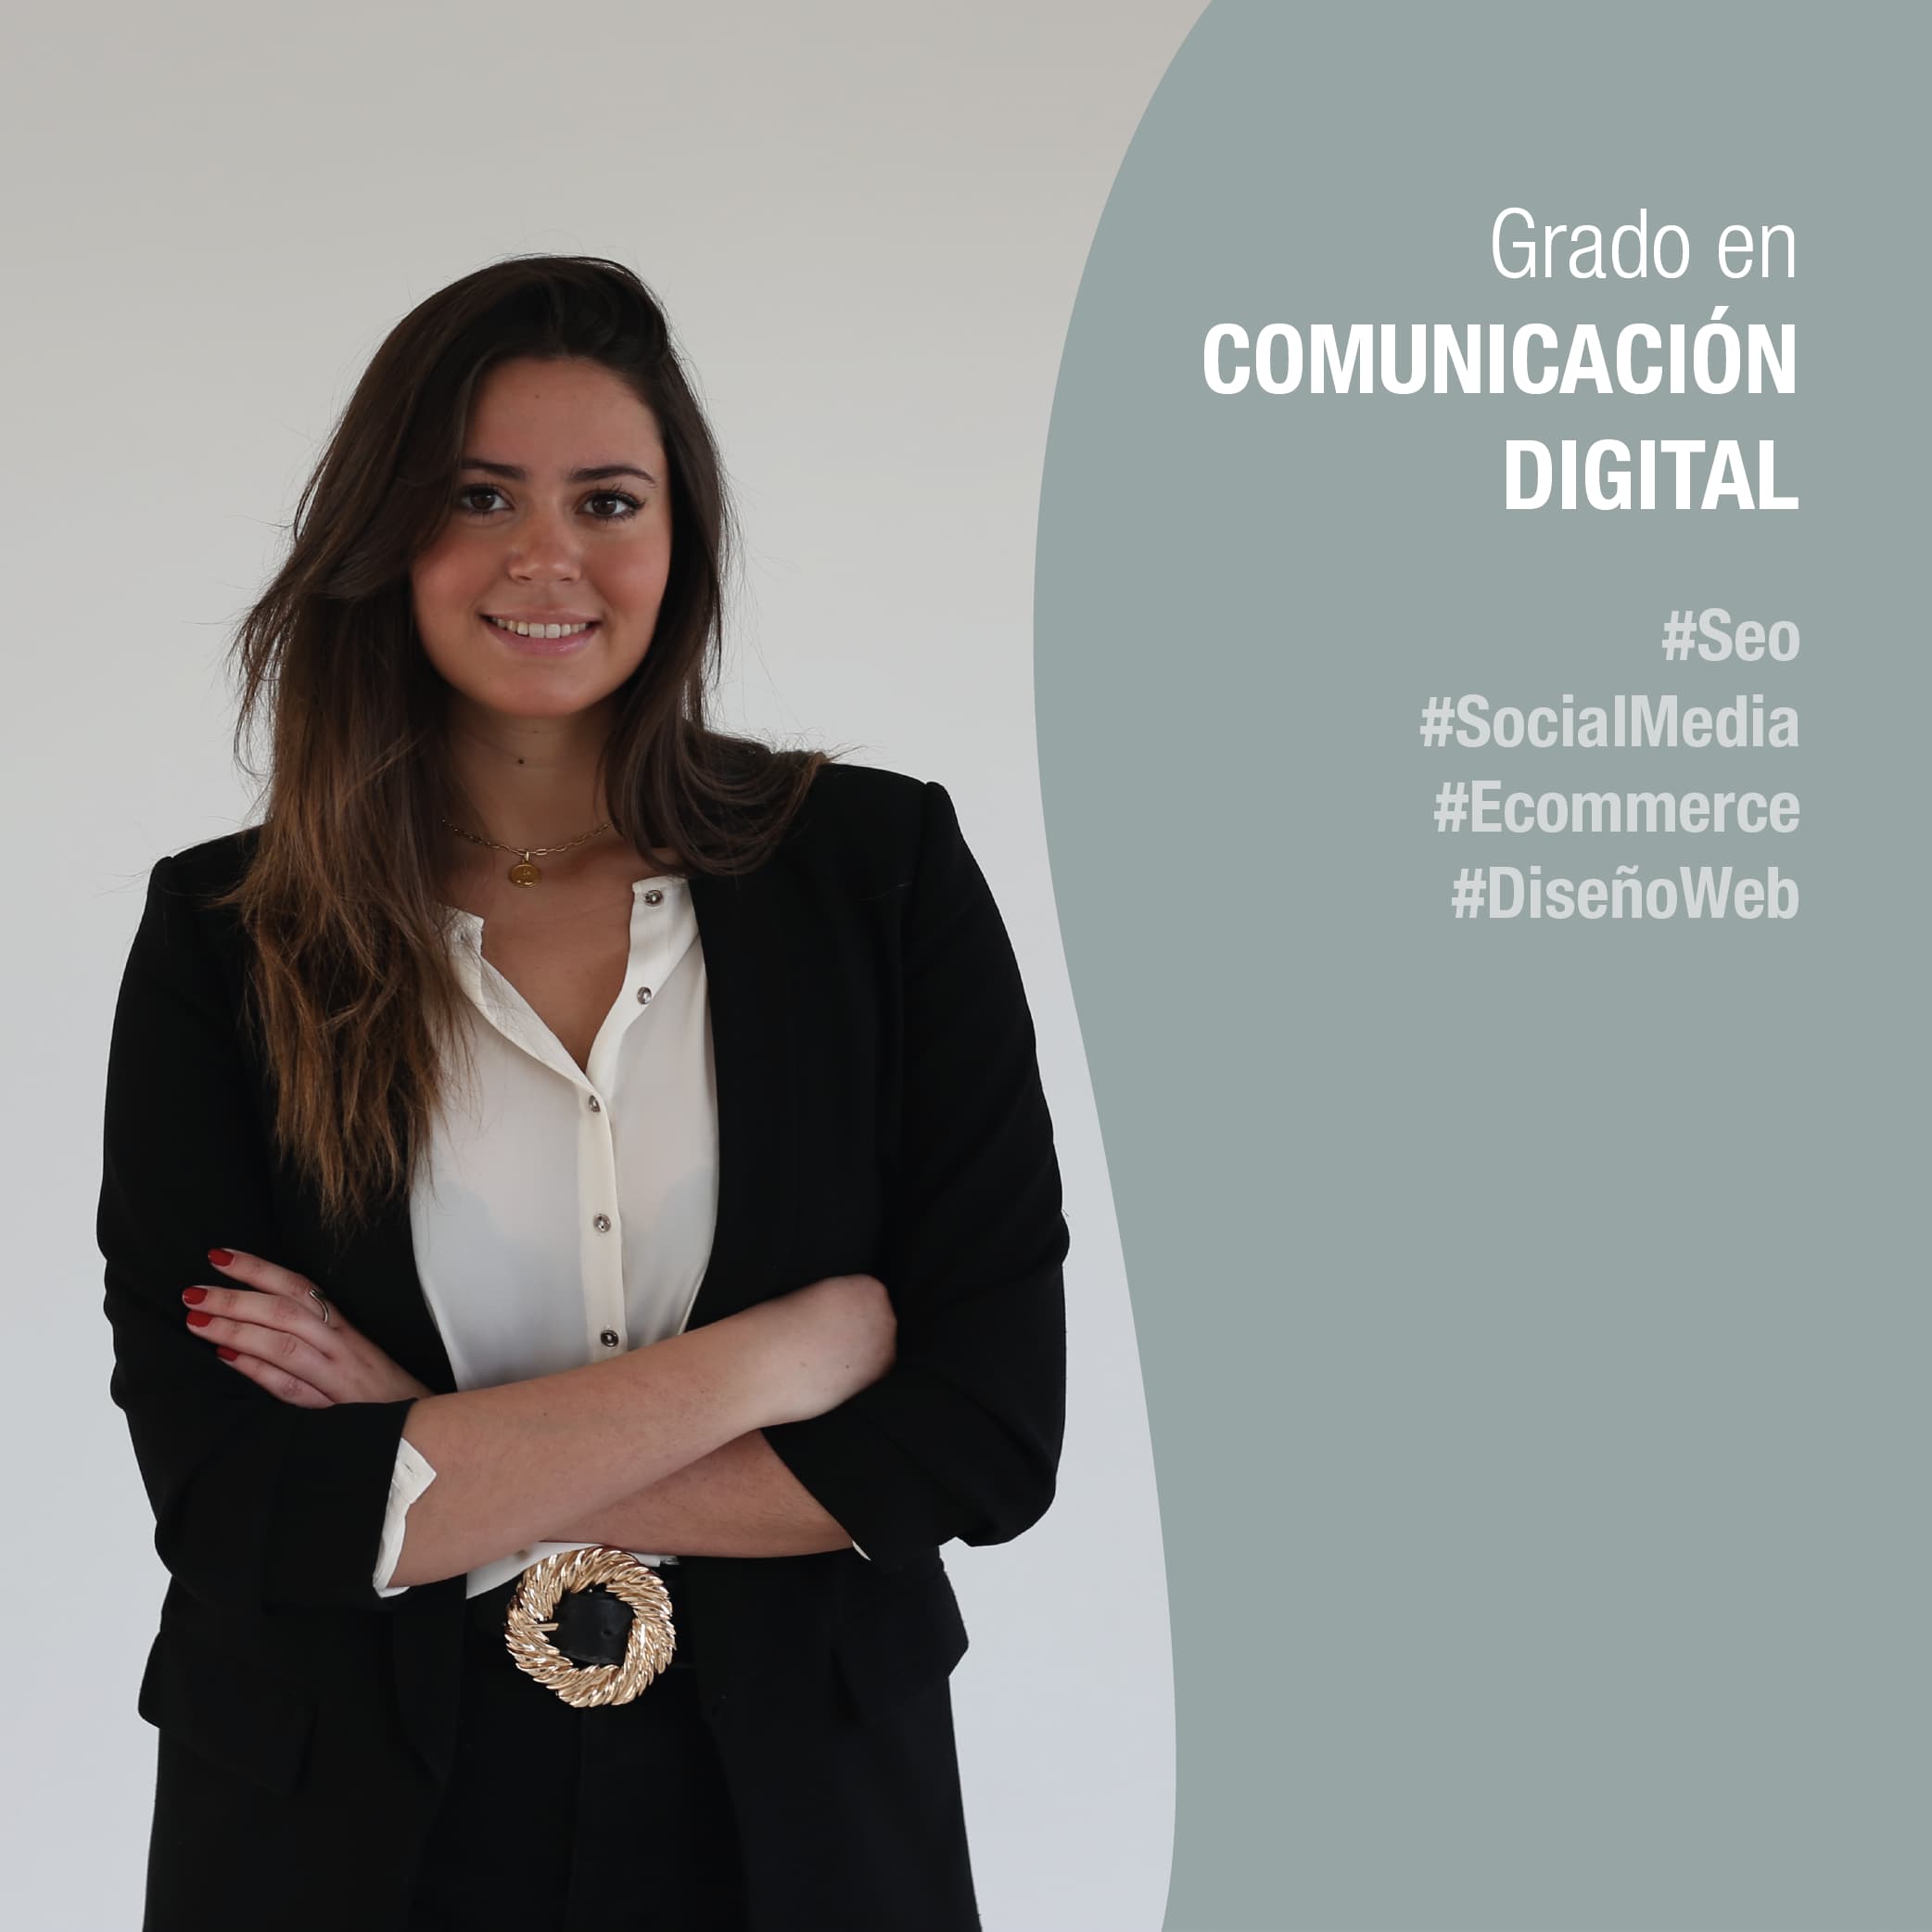 Grado Comunicación Digital. Sevilla